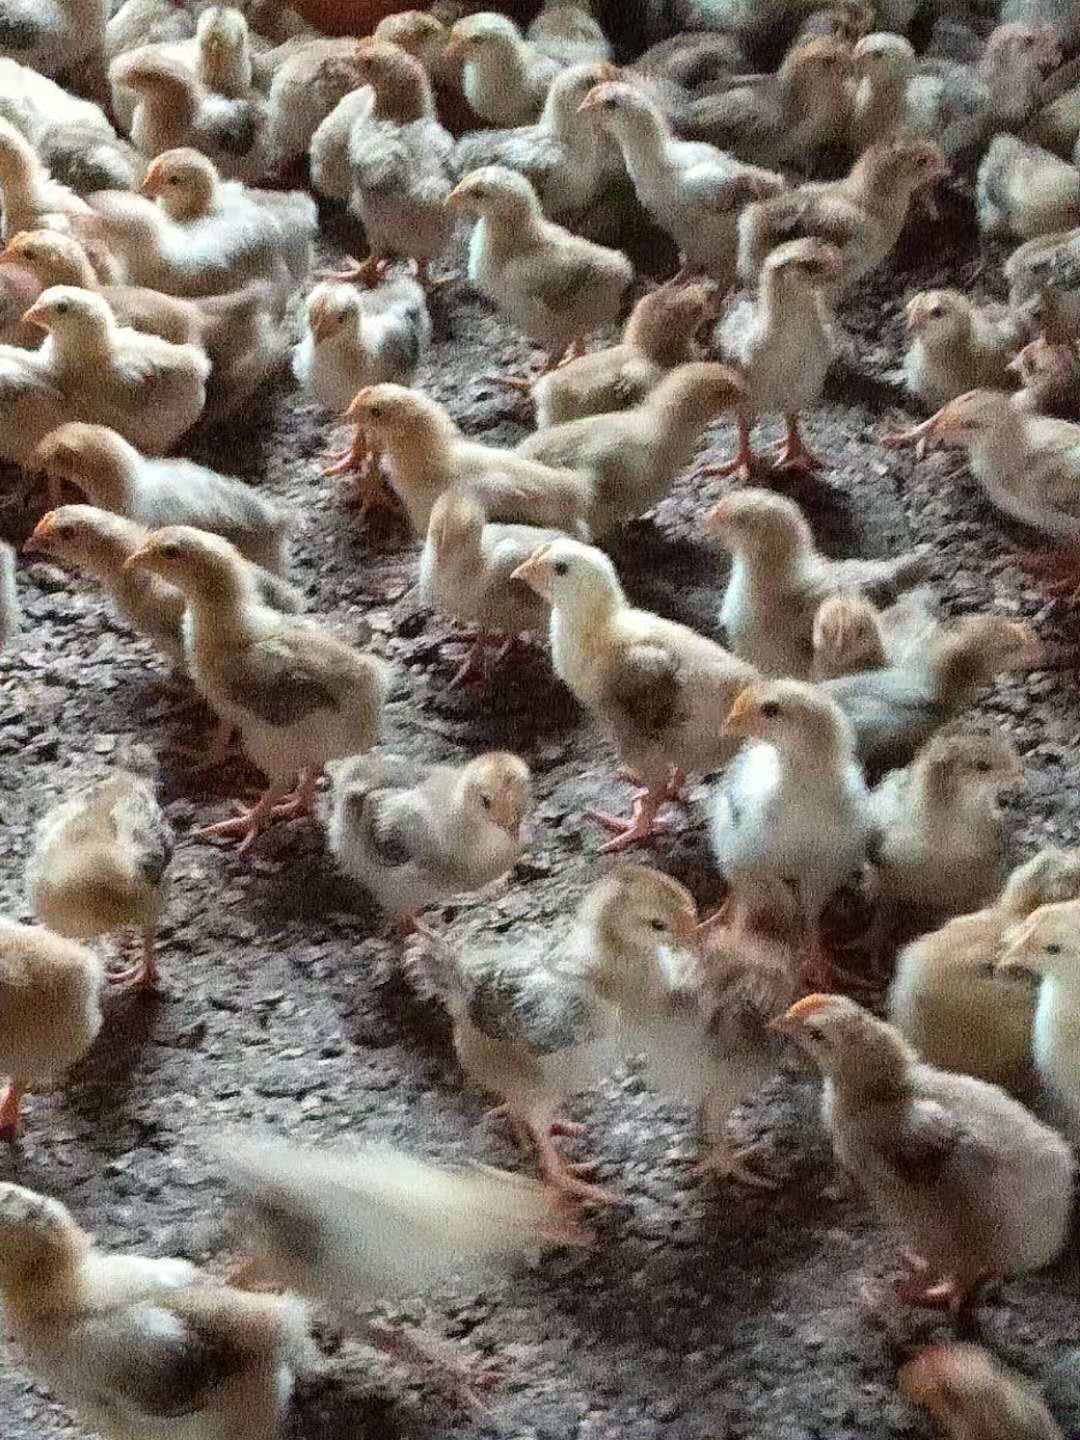 海兰褐母鸡和土鸡杂交图片